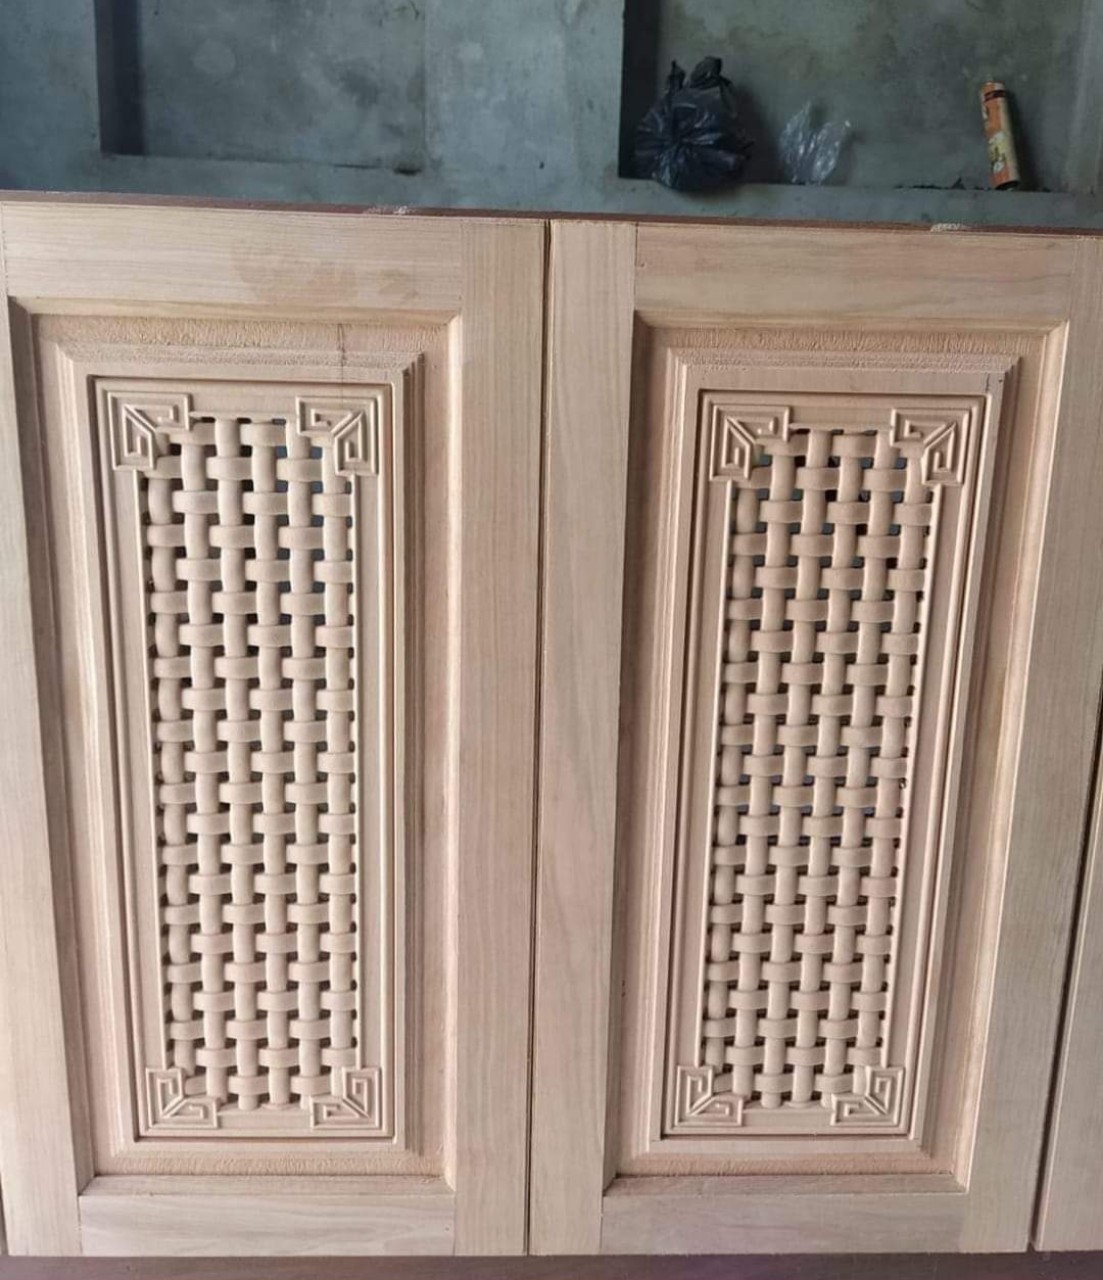 Với sự kết hợp giữa sản xuất và thi công nội thất của Tân Hà - Lâm Hà, cửa tủ bếp gỗ trở nên đẹp mắt và chắc chắn hơn bao giờ hết. Thiết kế mới nhất của chúng tôi đảm bảo sự sang trọng và hiện đại cho căn bếp của bạn.